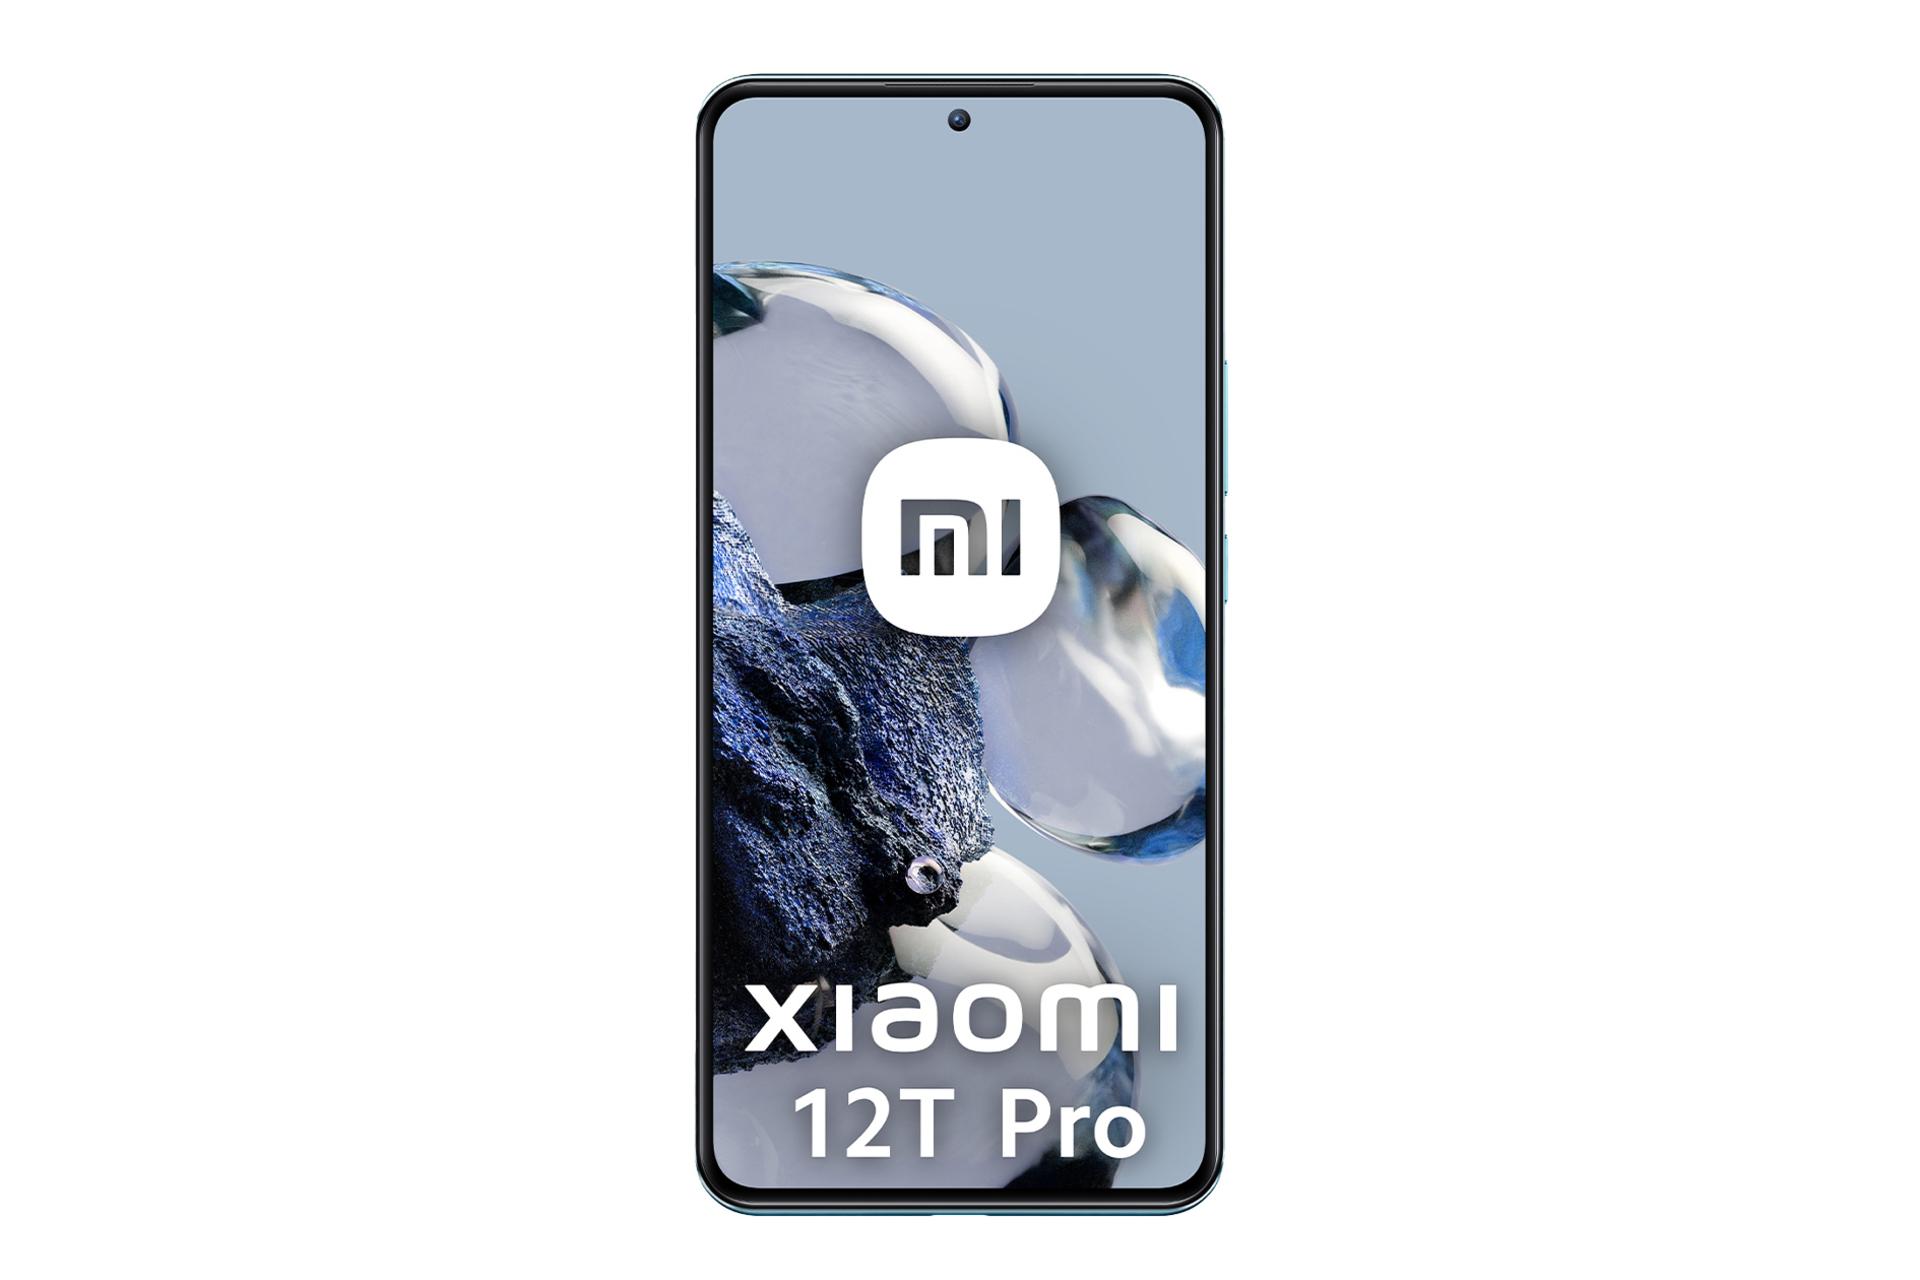 نمای جلوی گوشی موبایل شیائومی 12T پرو / Xiaomi 12T Pro با نمایشگر روشن و نمایش حاشیه های صفحه نمایش